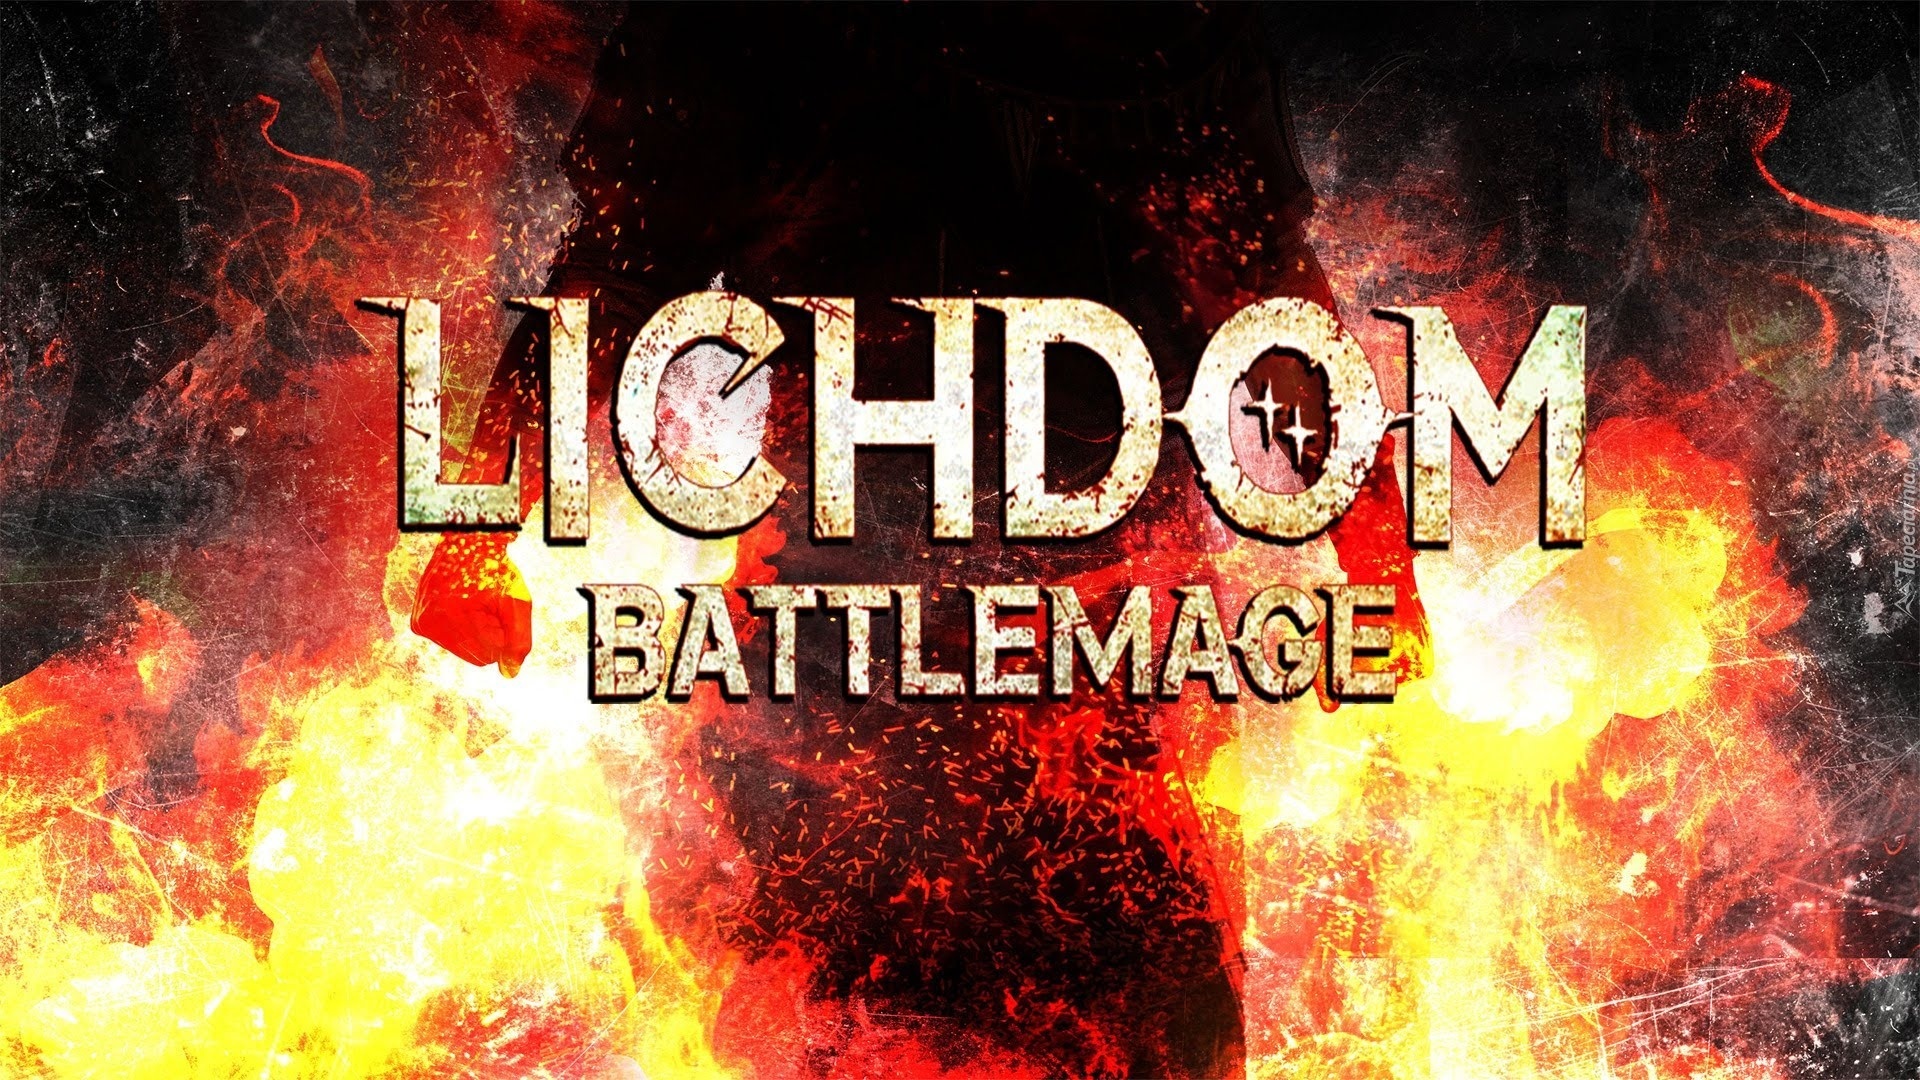 lichdom battlemage pc download free